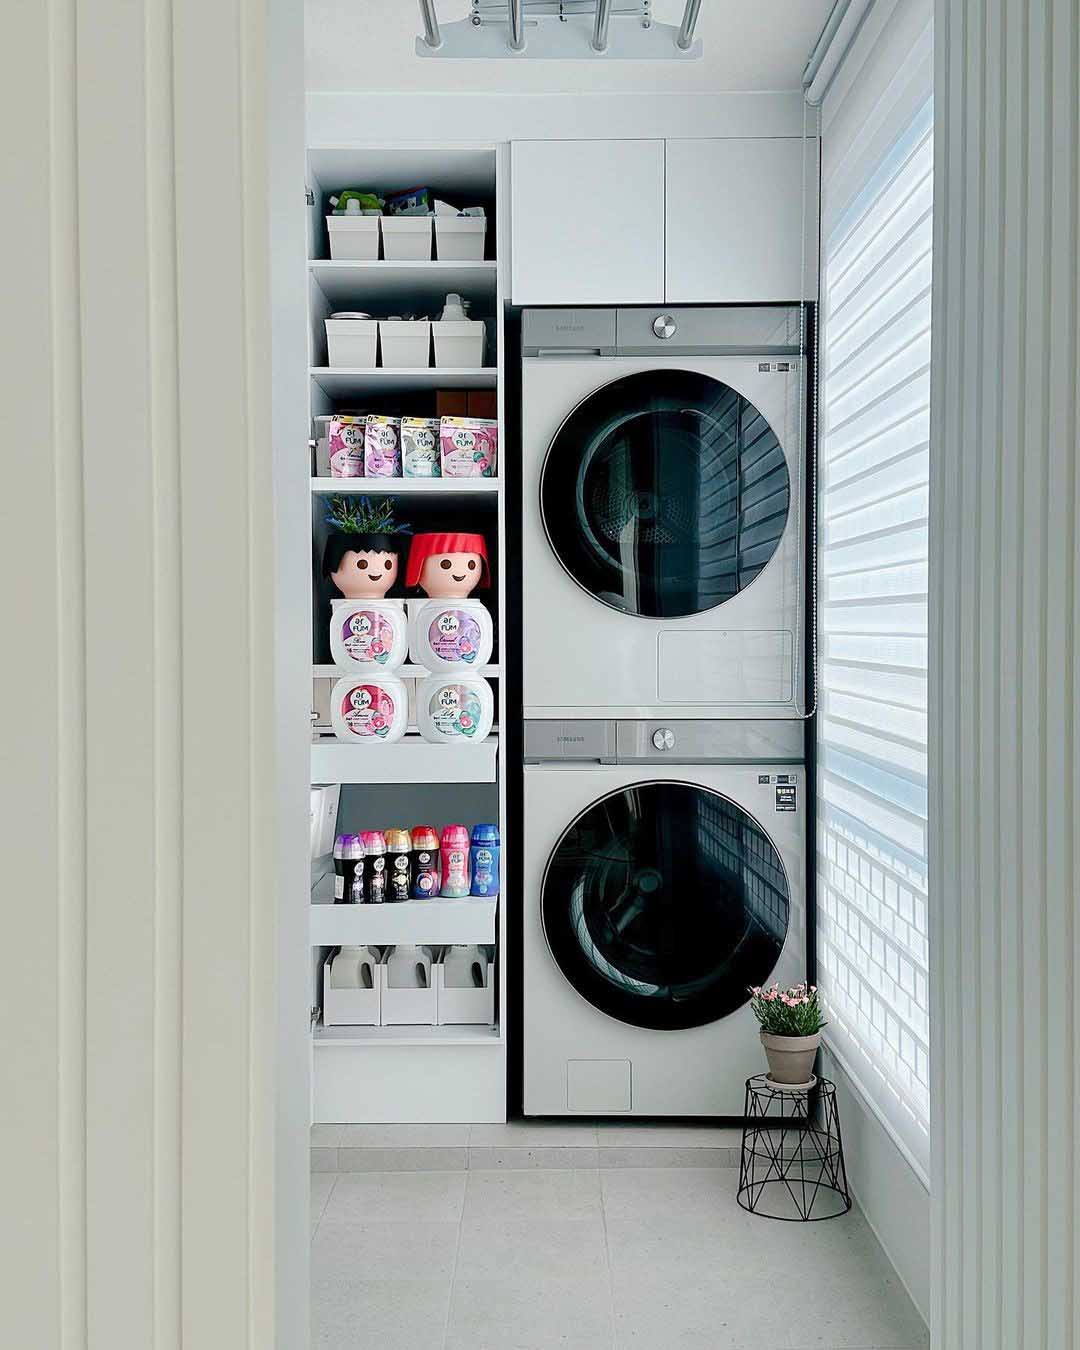 Phòng giặt 3㎡ được mẹ đảm ở Hàn Quốc sắp xếp lại vô cùng tinh tế - Ảnh 1.